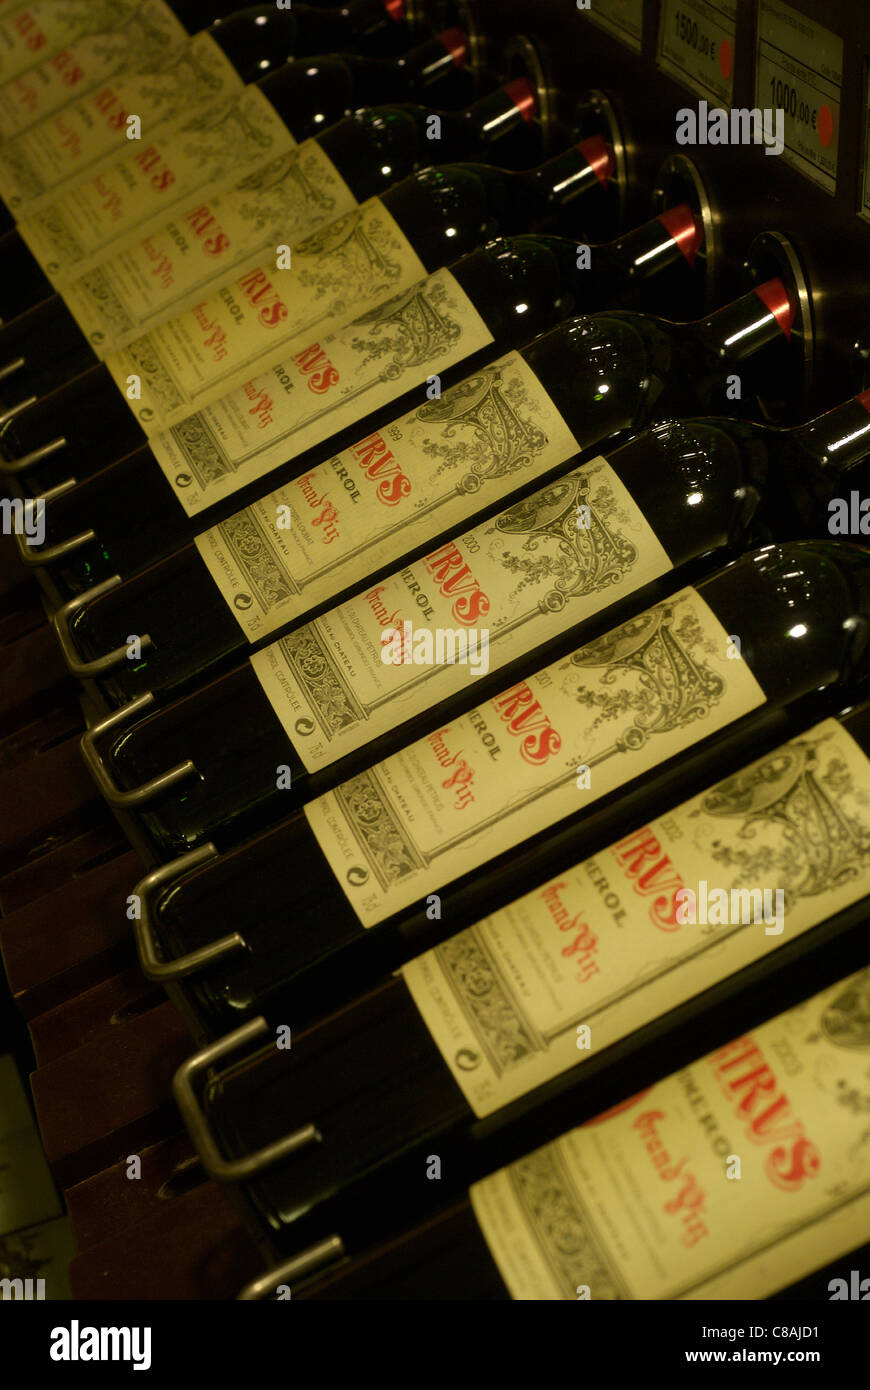 Botellas de vino Chateau Petrus en una línea. Foto de stock